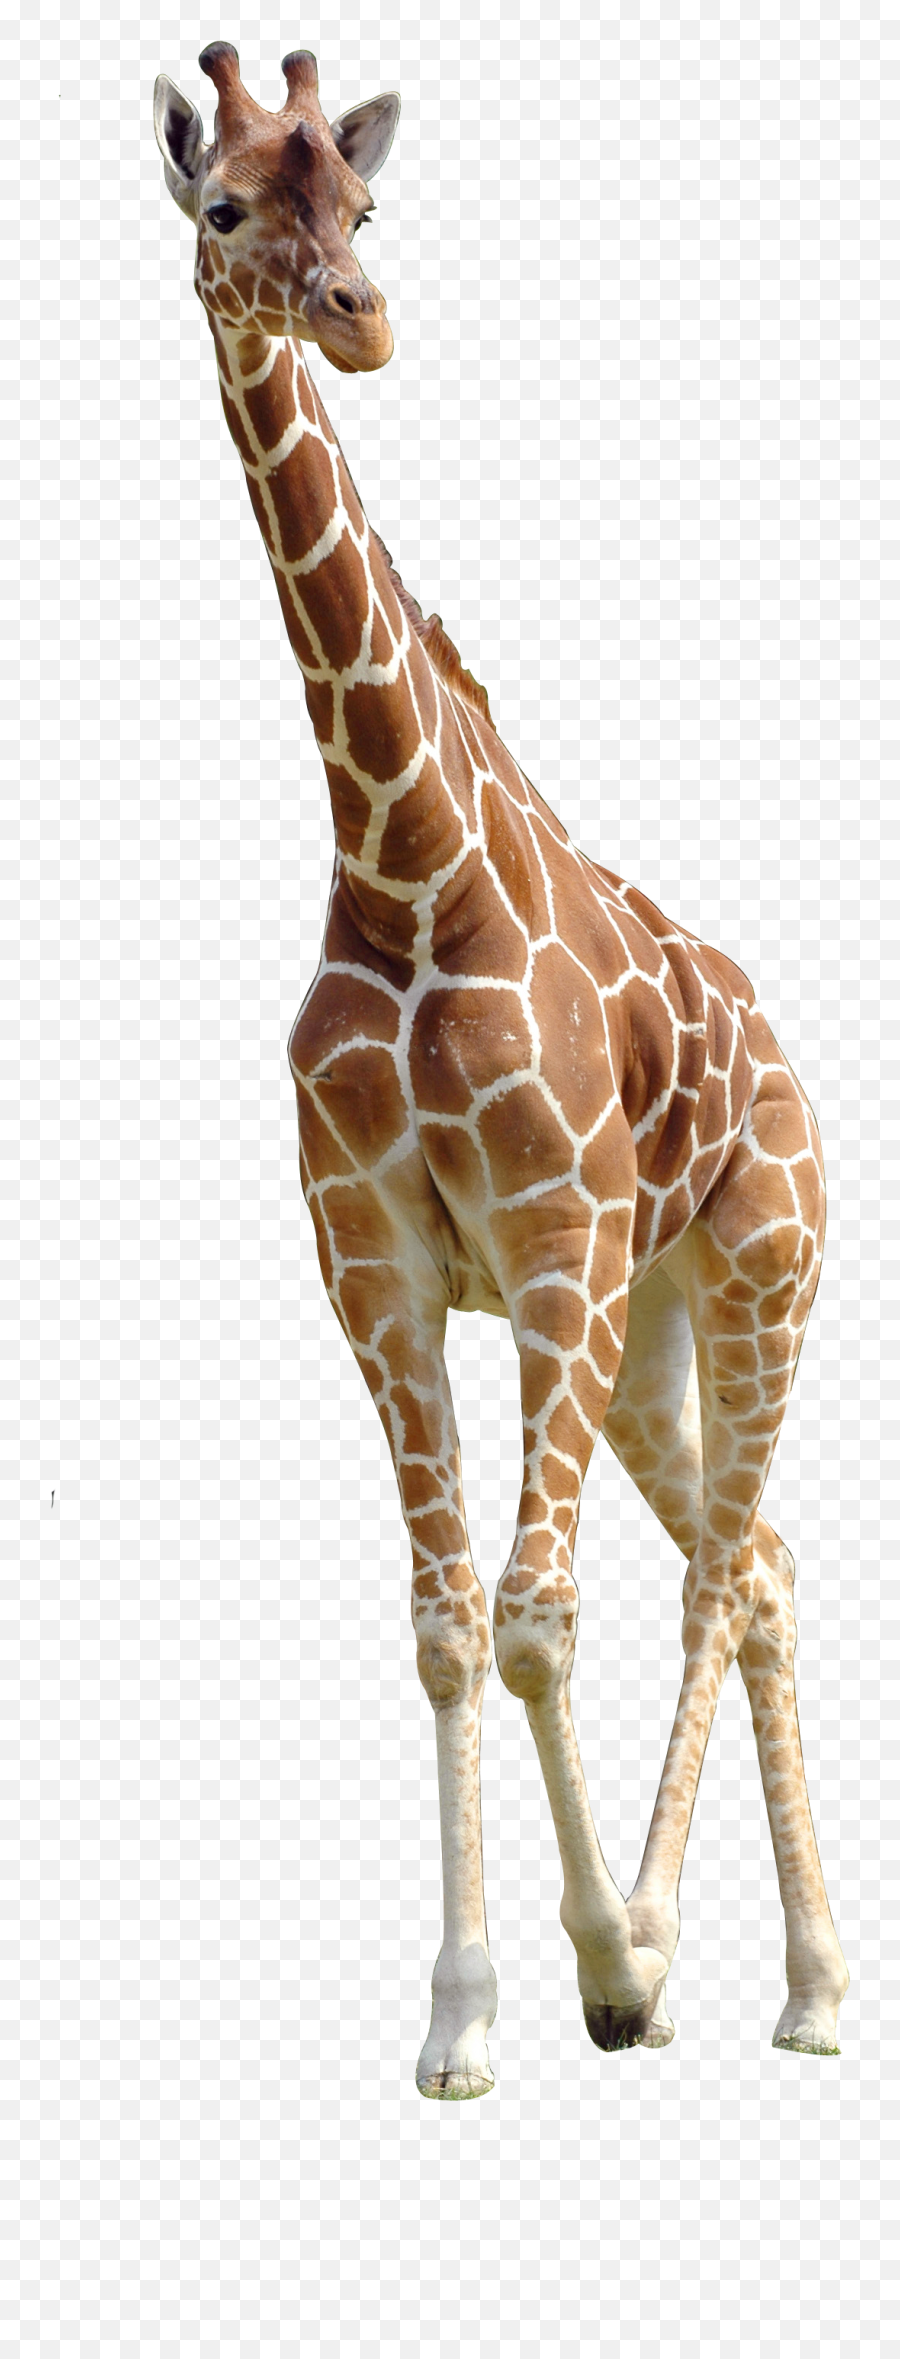 Giraffe Png Download - Giraffe Png Transparent,Giraffe Transparent